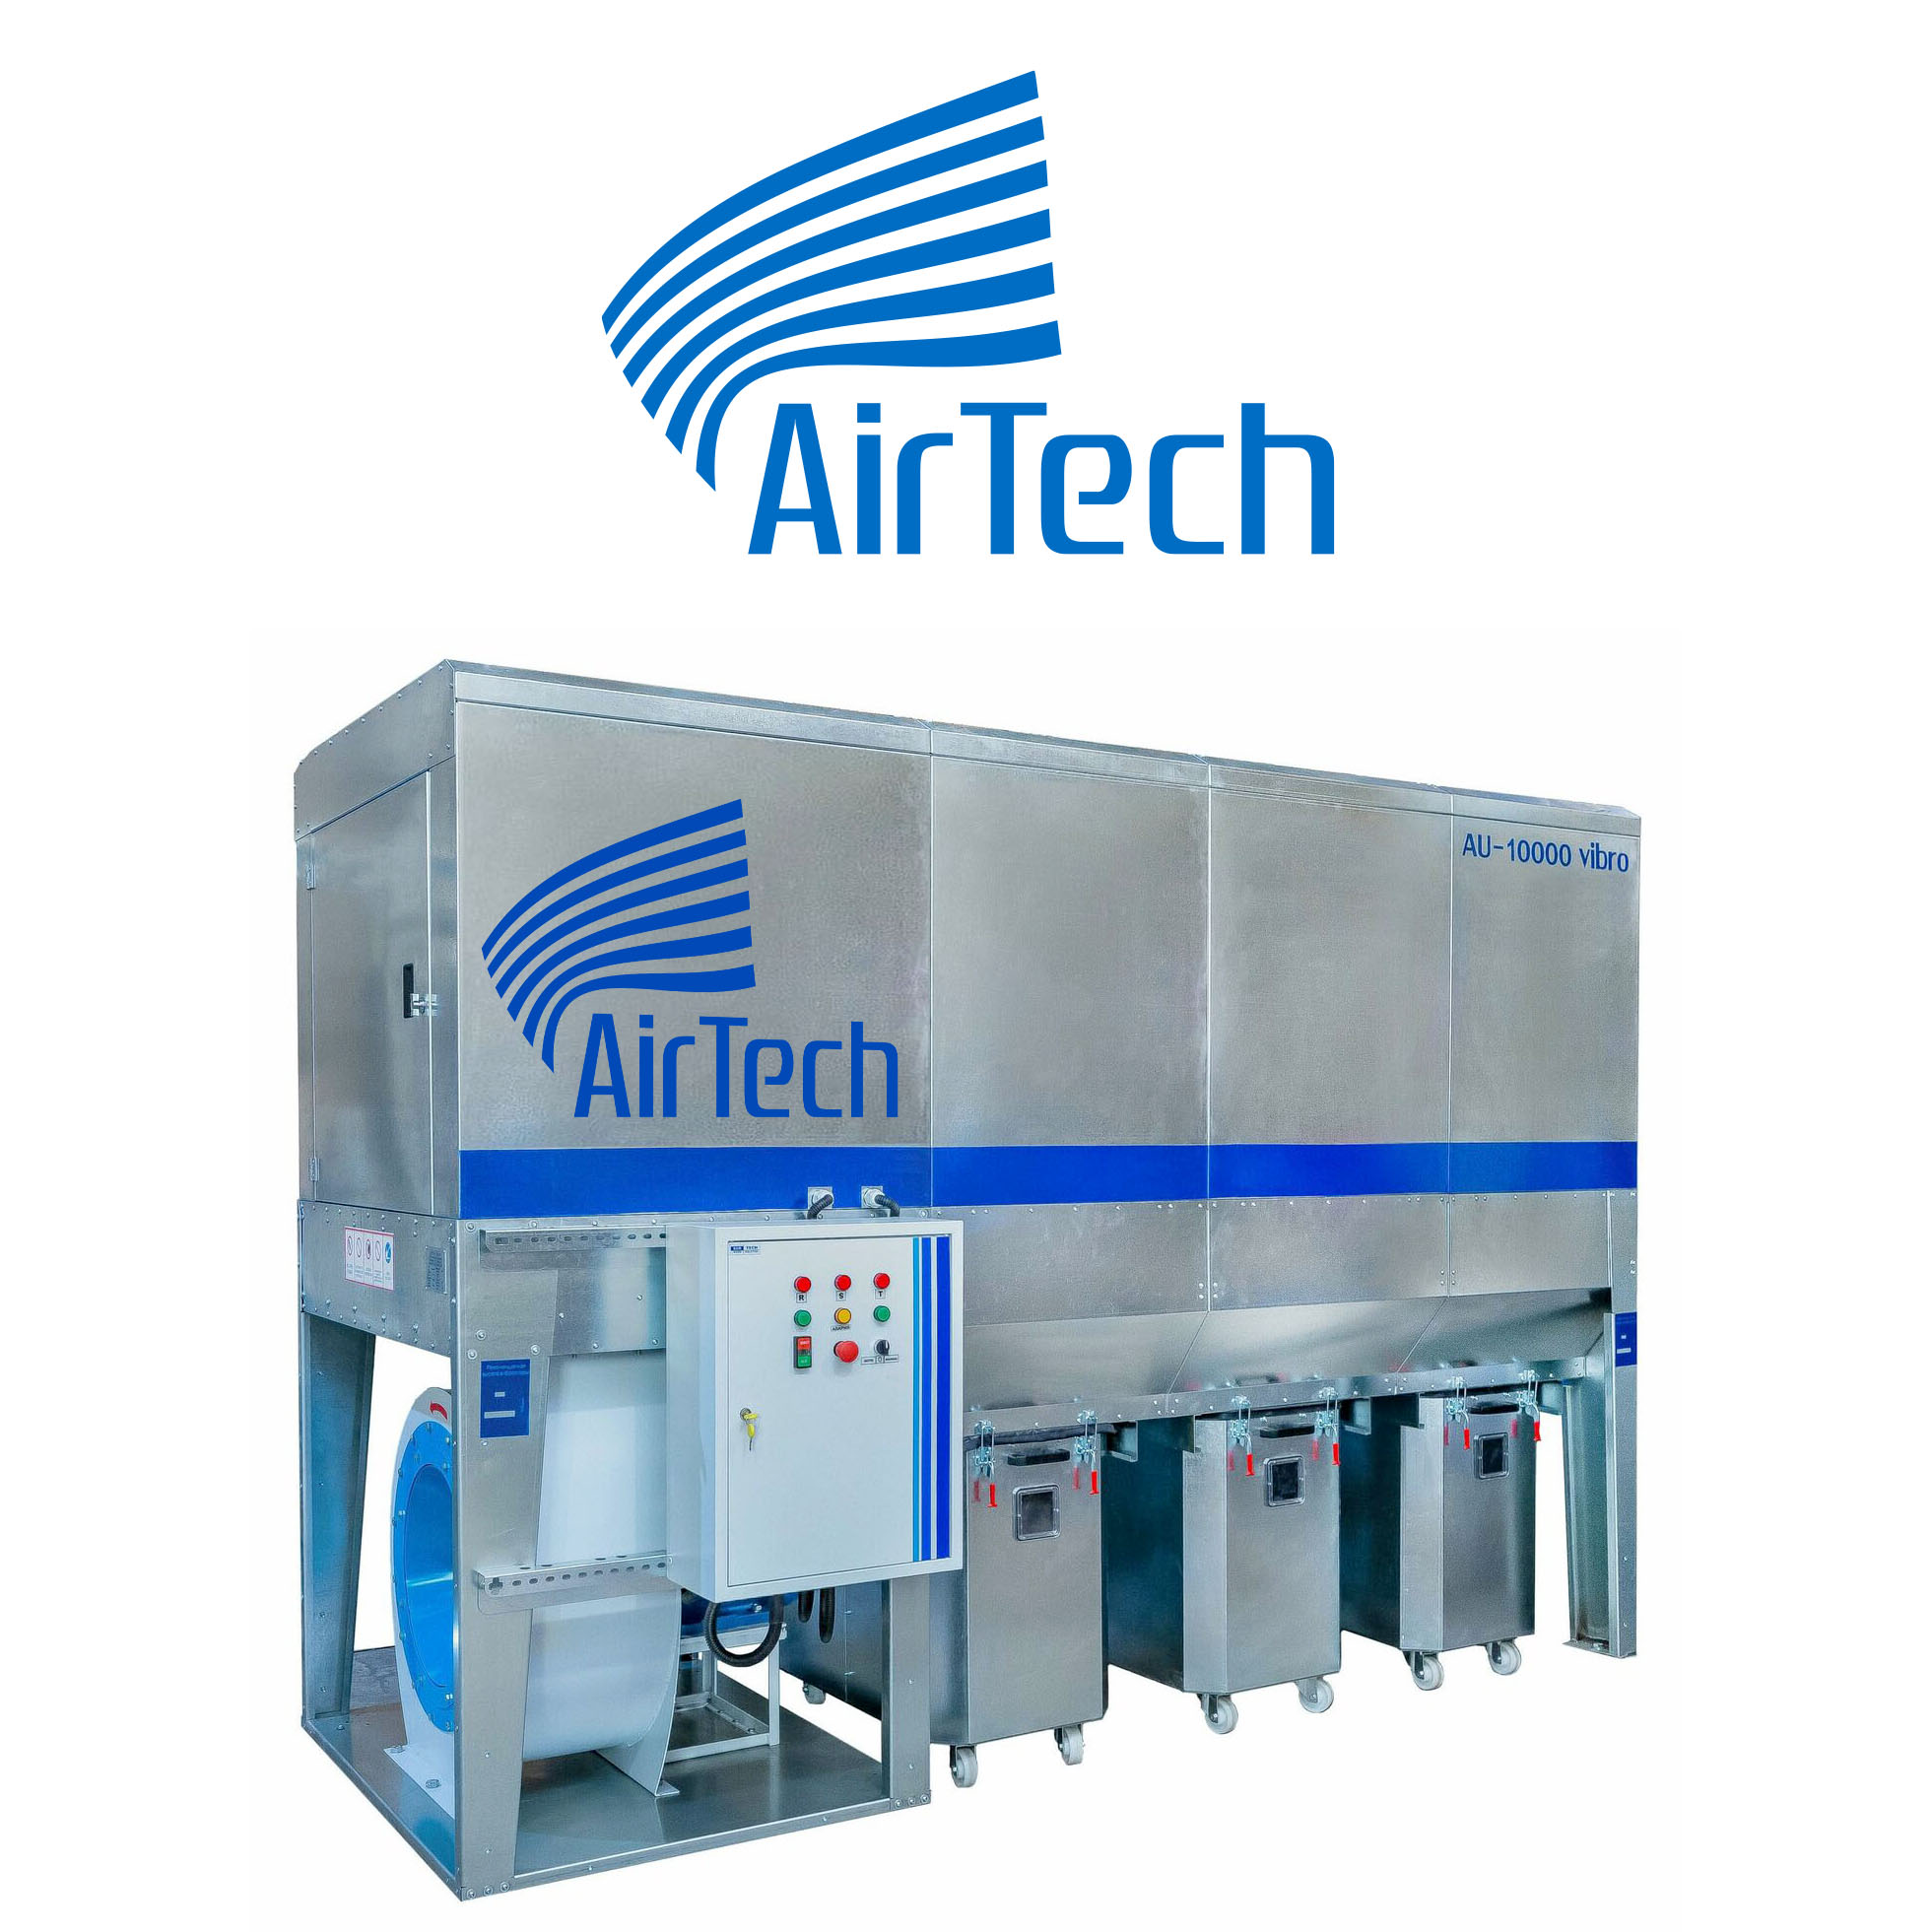 AirTech_1.jpg